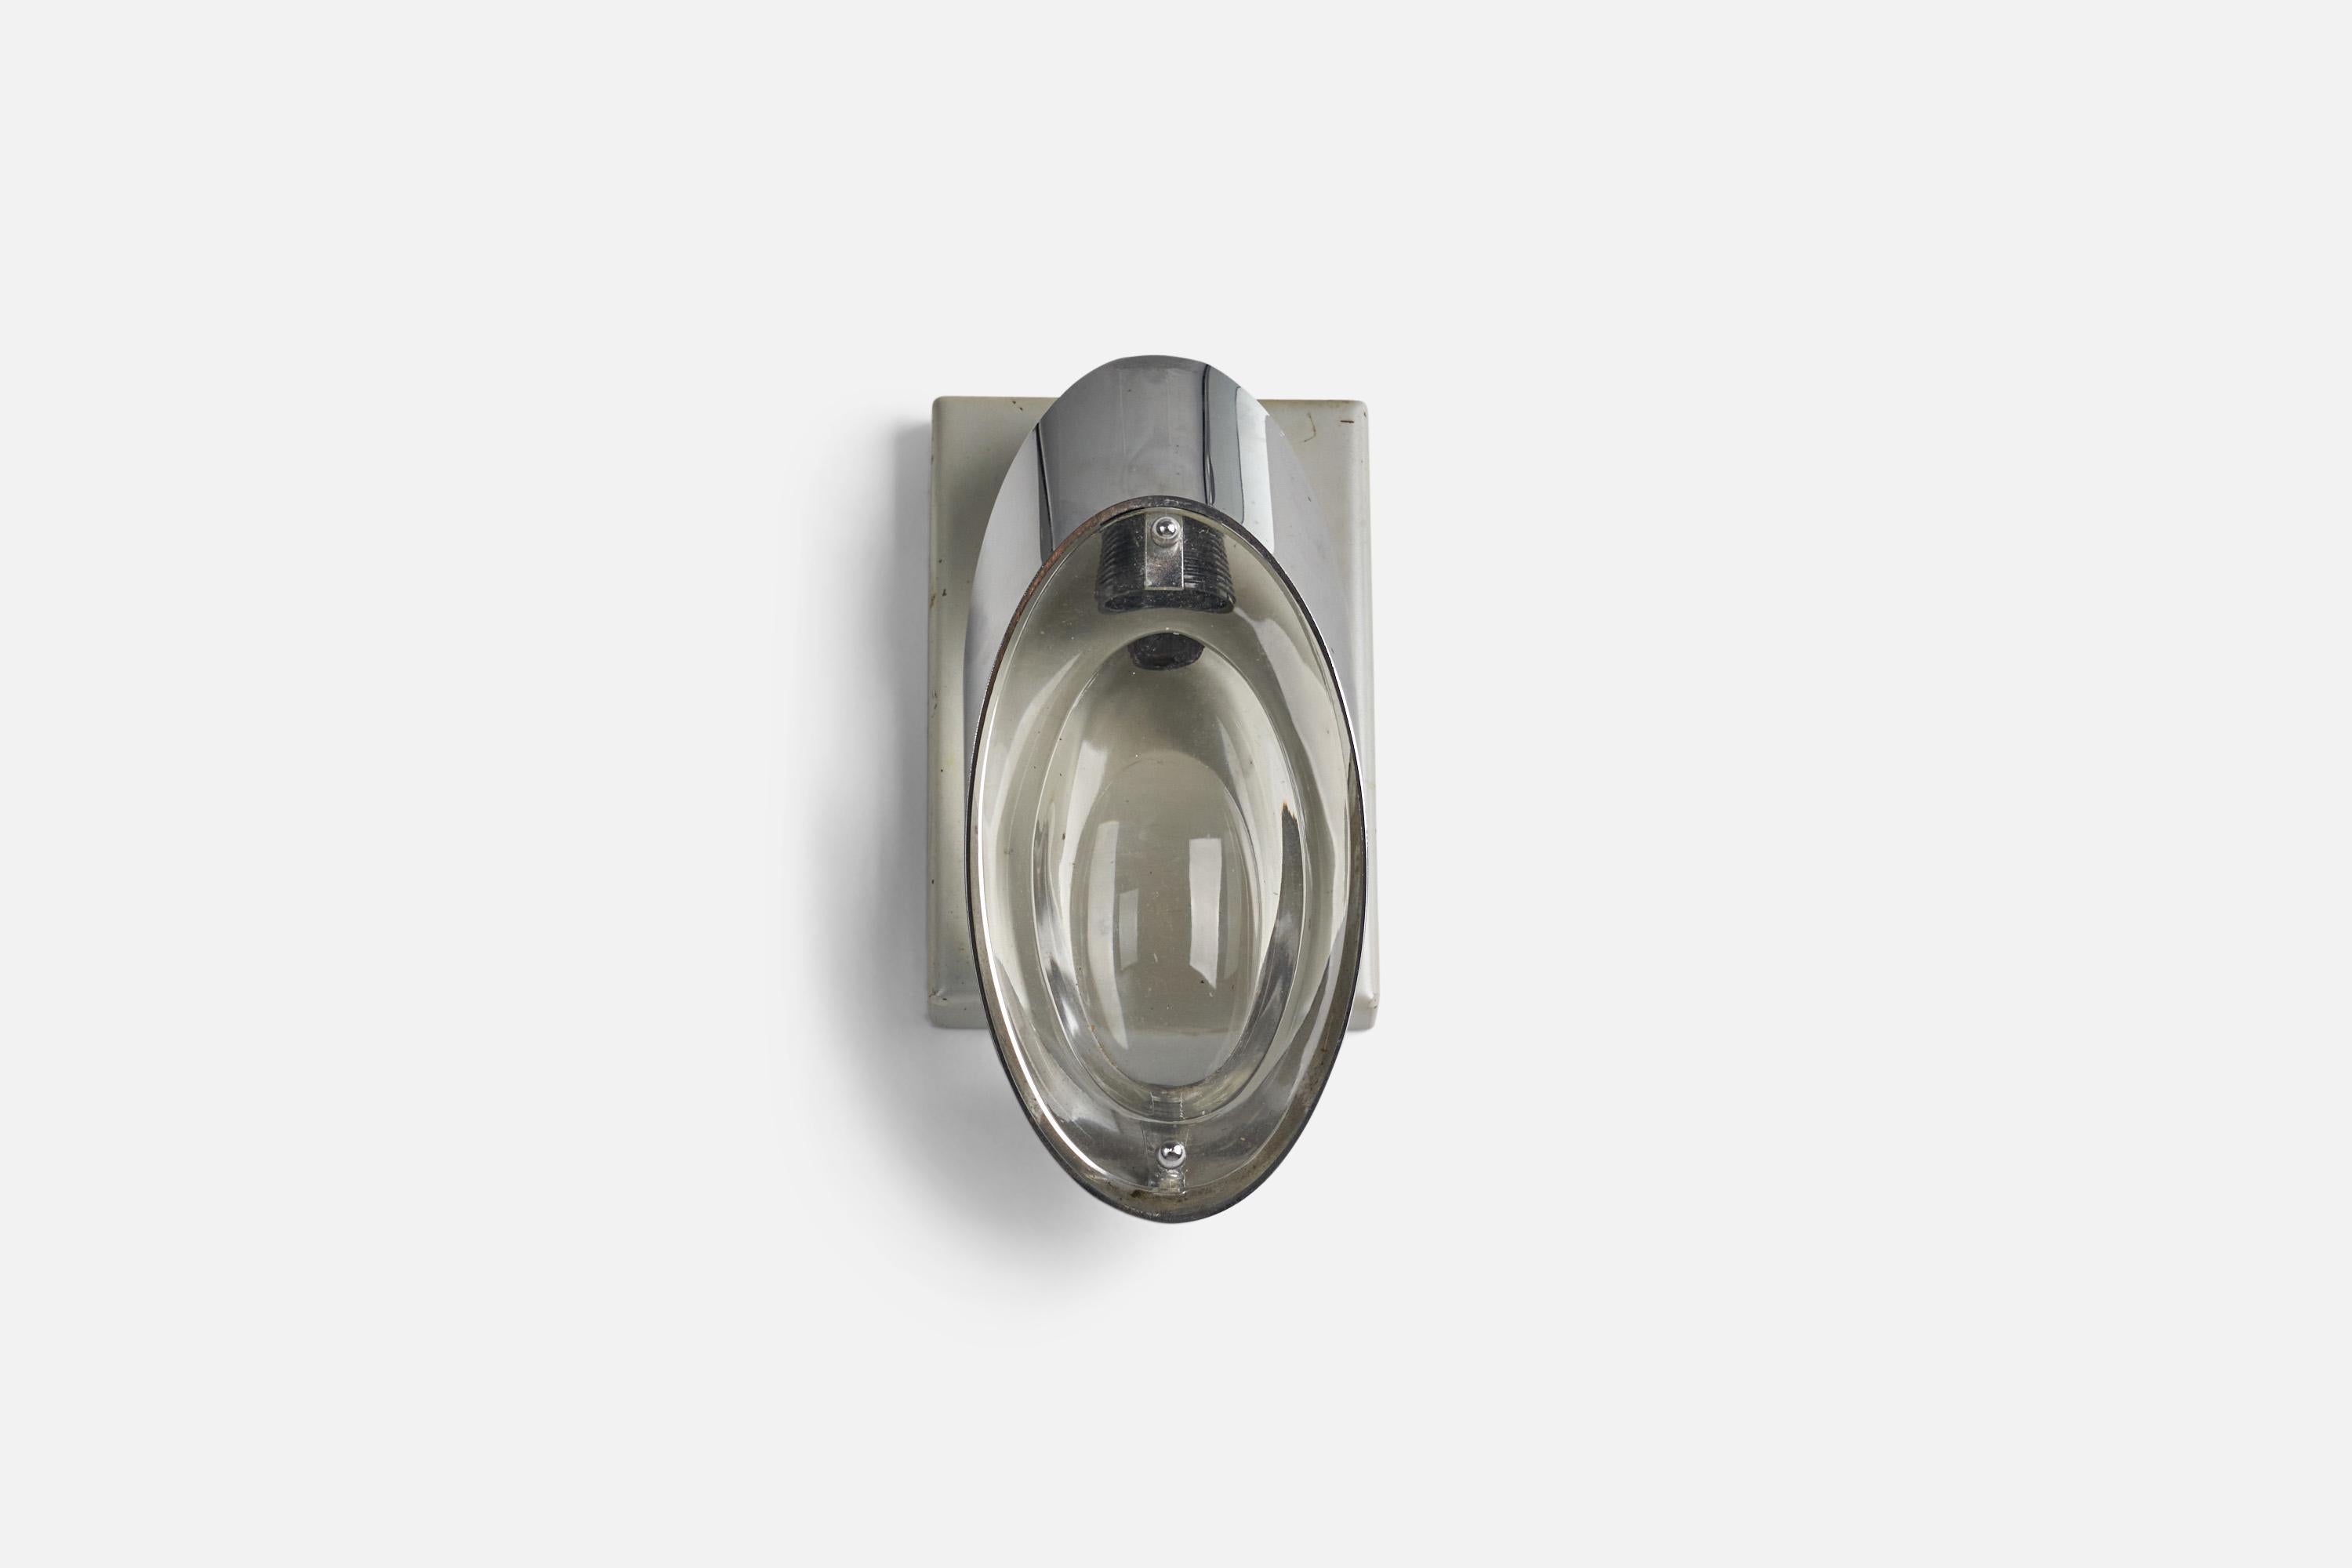 Applique en métal et en verre, conçue par Oscar Torlasco pour Stilkronen, Italie, années 1960.

Les douilles acceptent les ampoules E-12.

Dimensions de la plaque arrière (pouces) : 6 x 4.06 x 0.68 (Hauteur x Largeur x Profondeur)

Il n'y a pas de